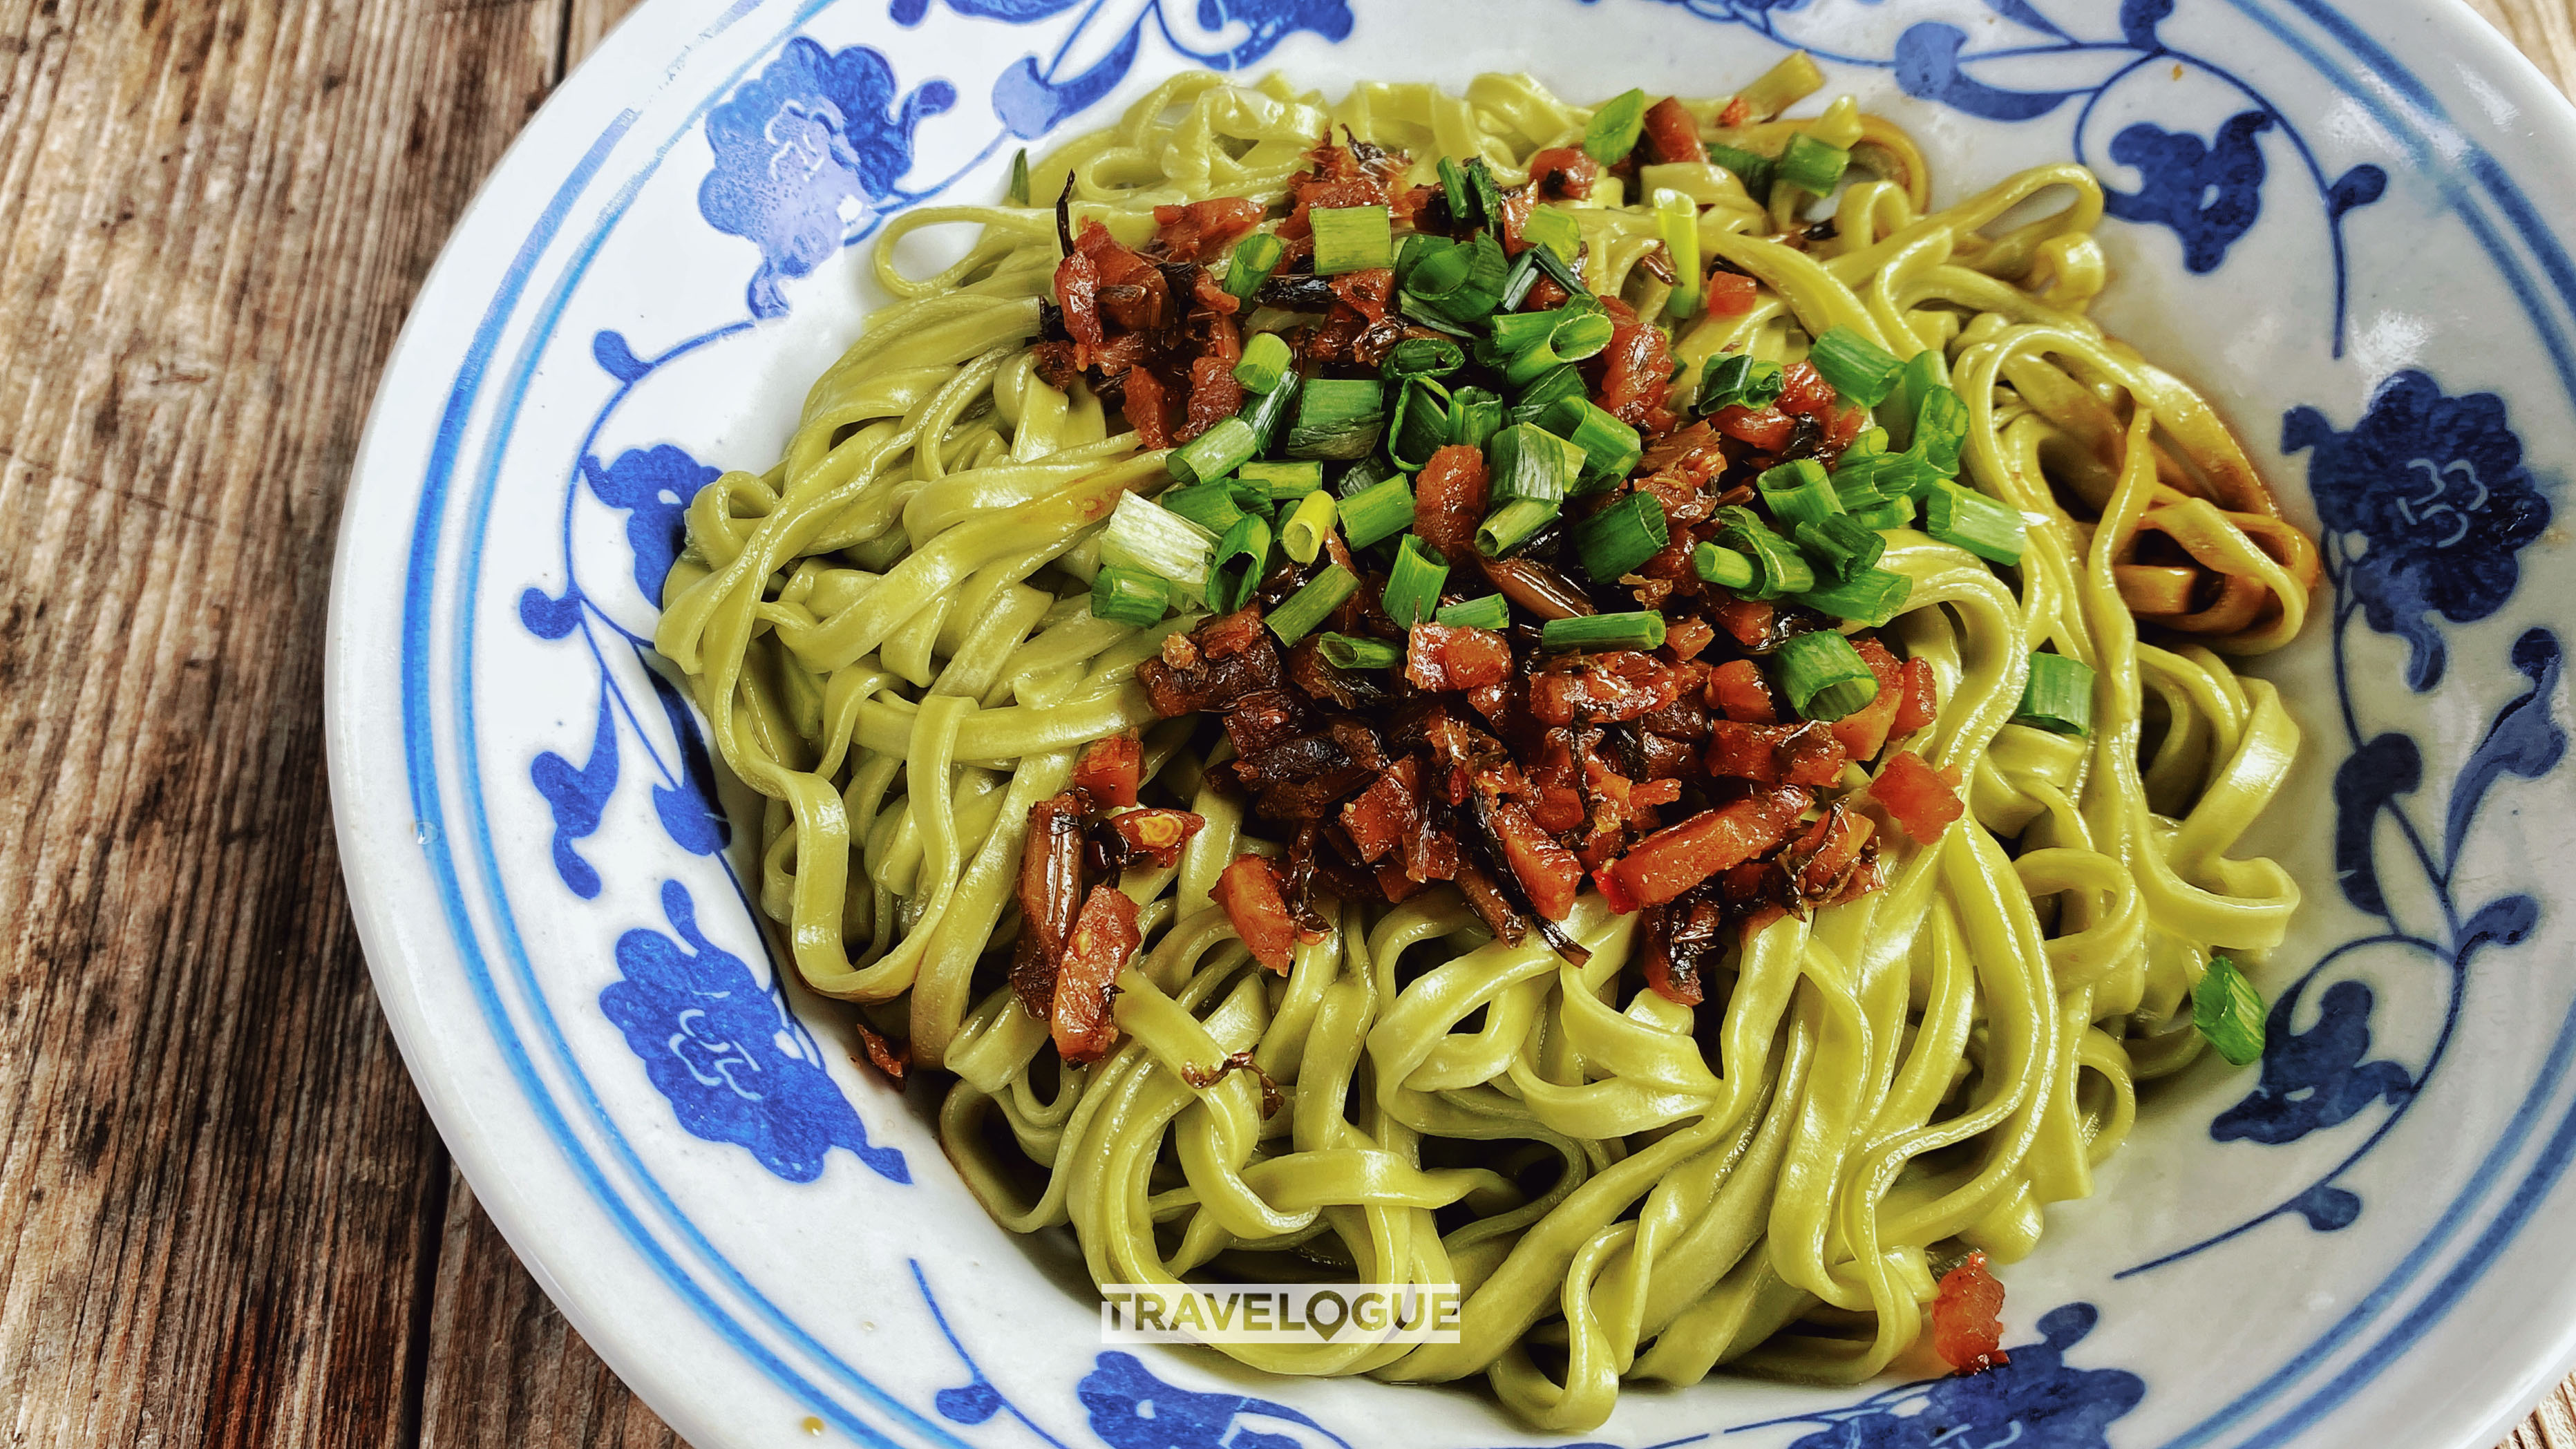 Green tea-infused noodles in Xiamei Village, Fujian /CGTN